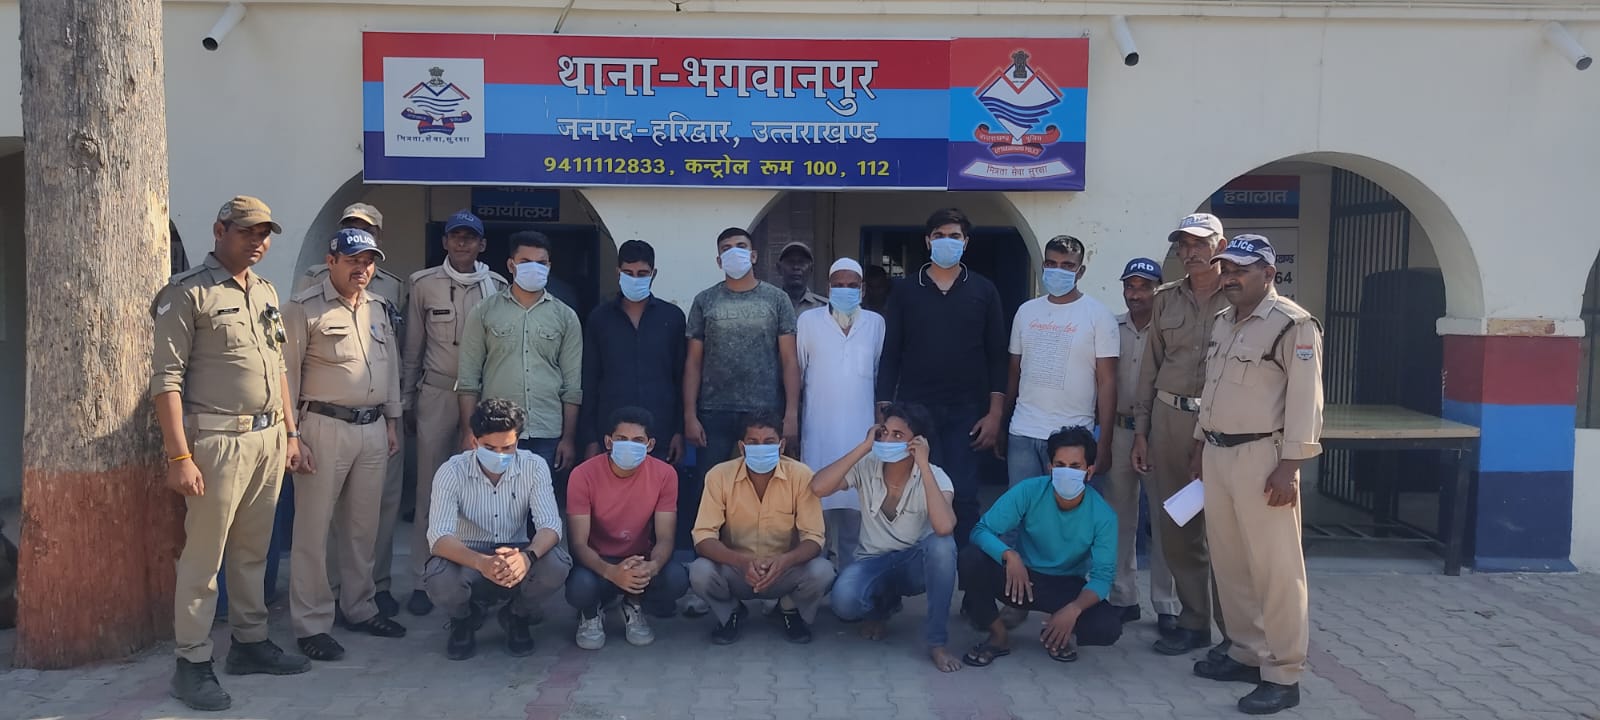 शांति भंग करने के आरोप में भगवानपुर पुलिस ने 11 दबोचे